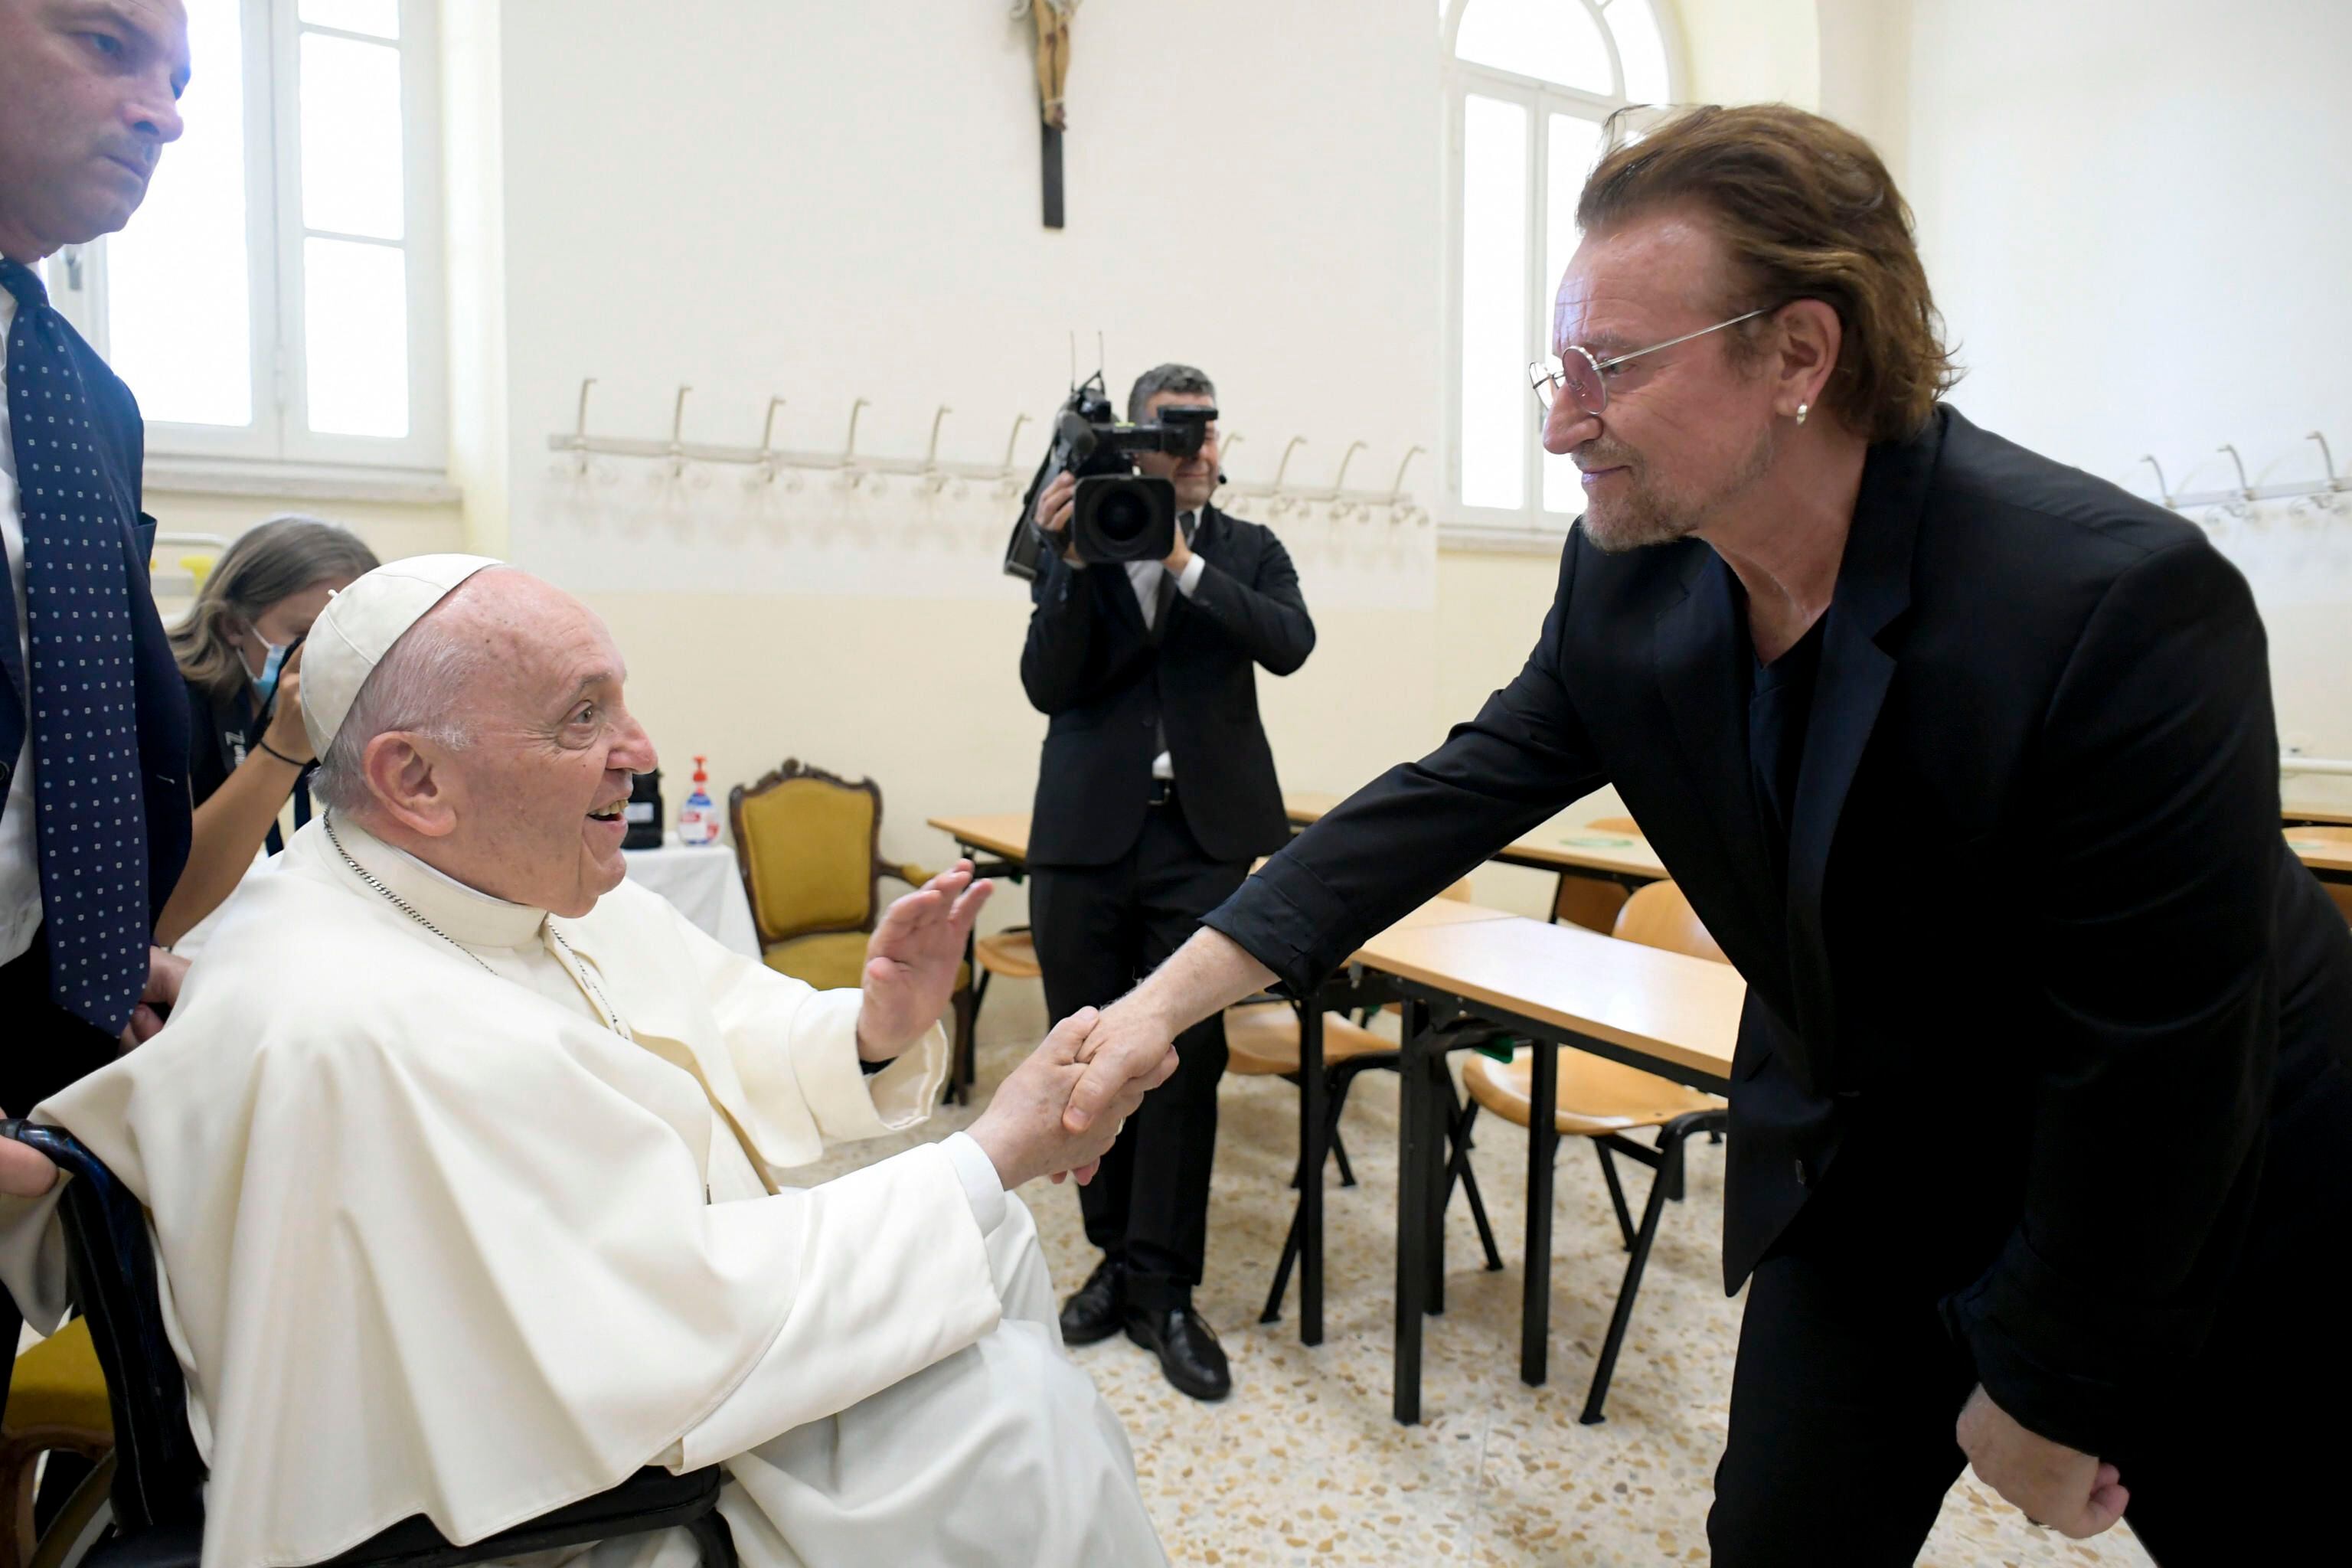 Imagen cedida del papa Francisco saludando a Bono, del grupo irlandés U2, . EFE/EPA/VATICAN MEDIA 